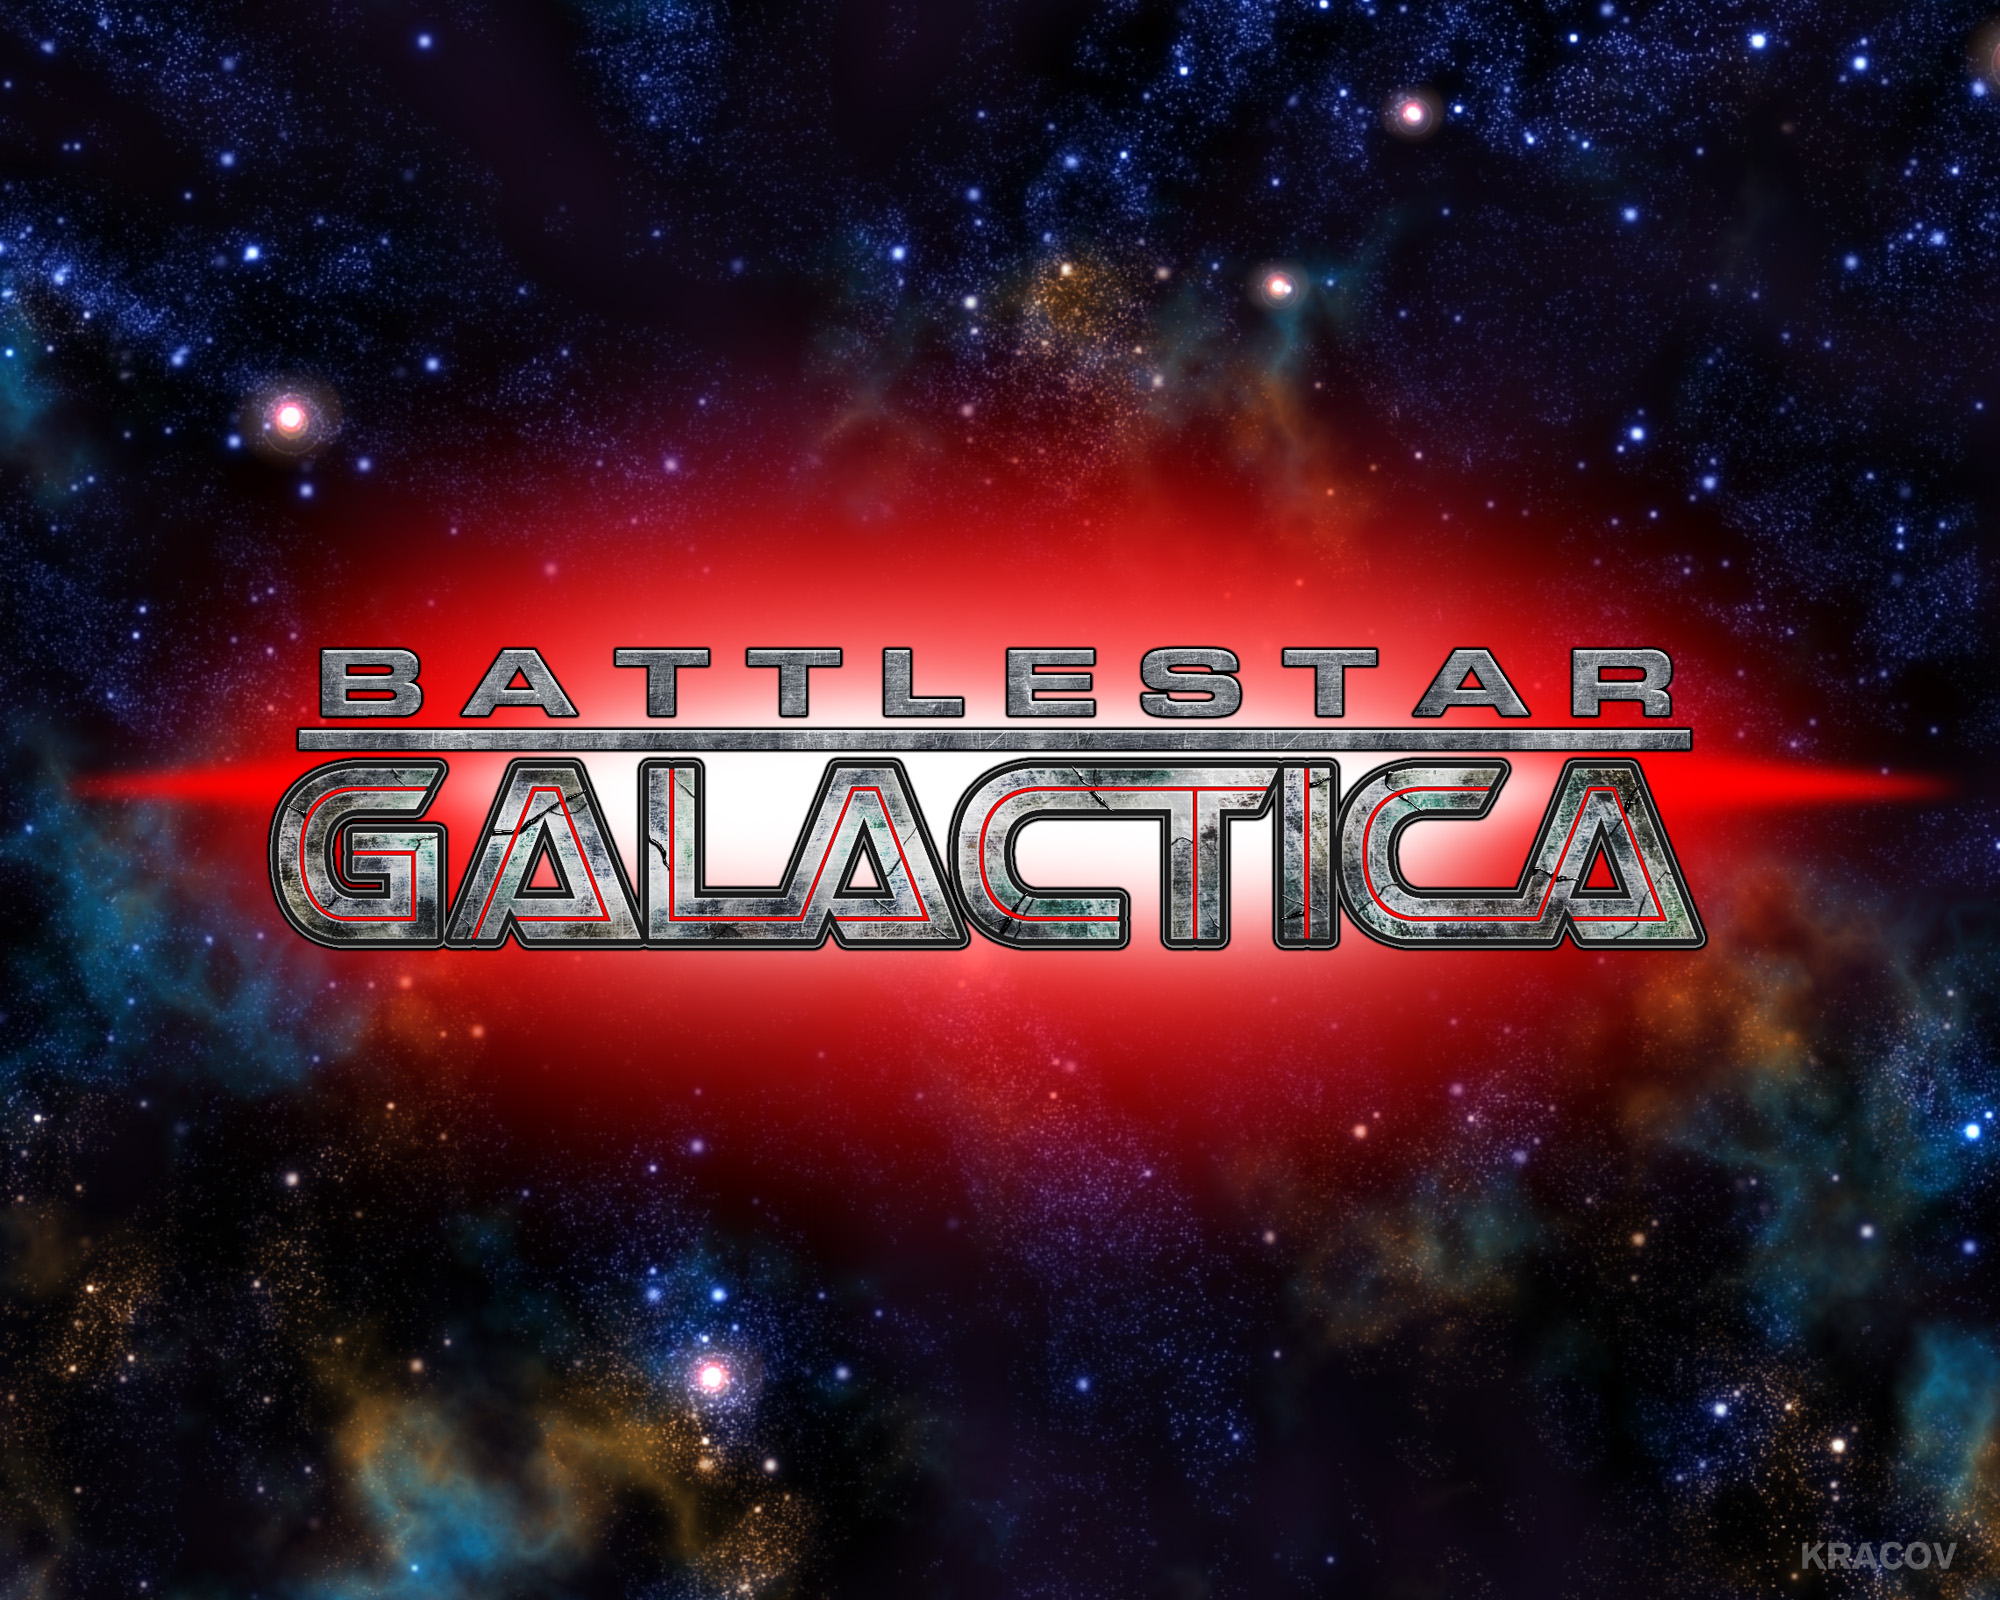 Battlestar Galactica Wallpaper 2 by Kracov on DeviantArt